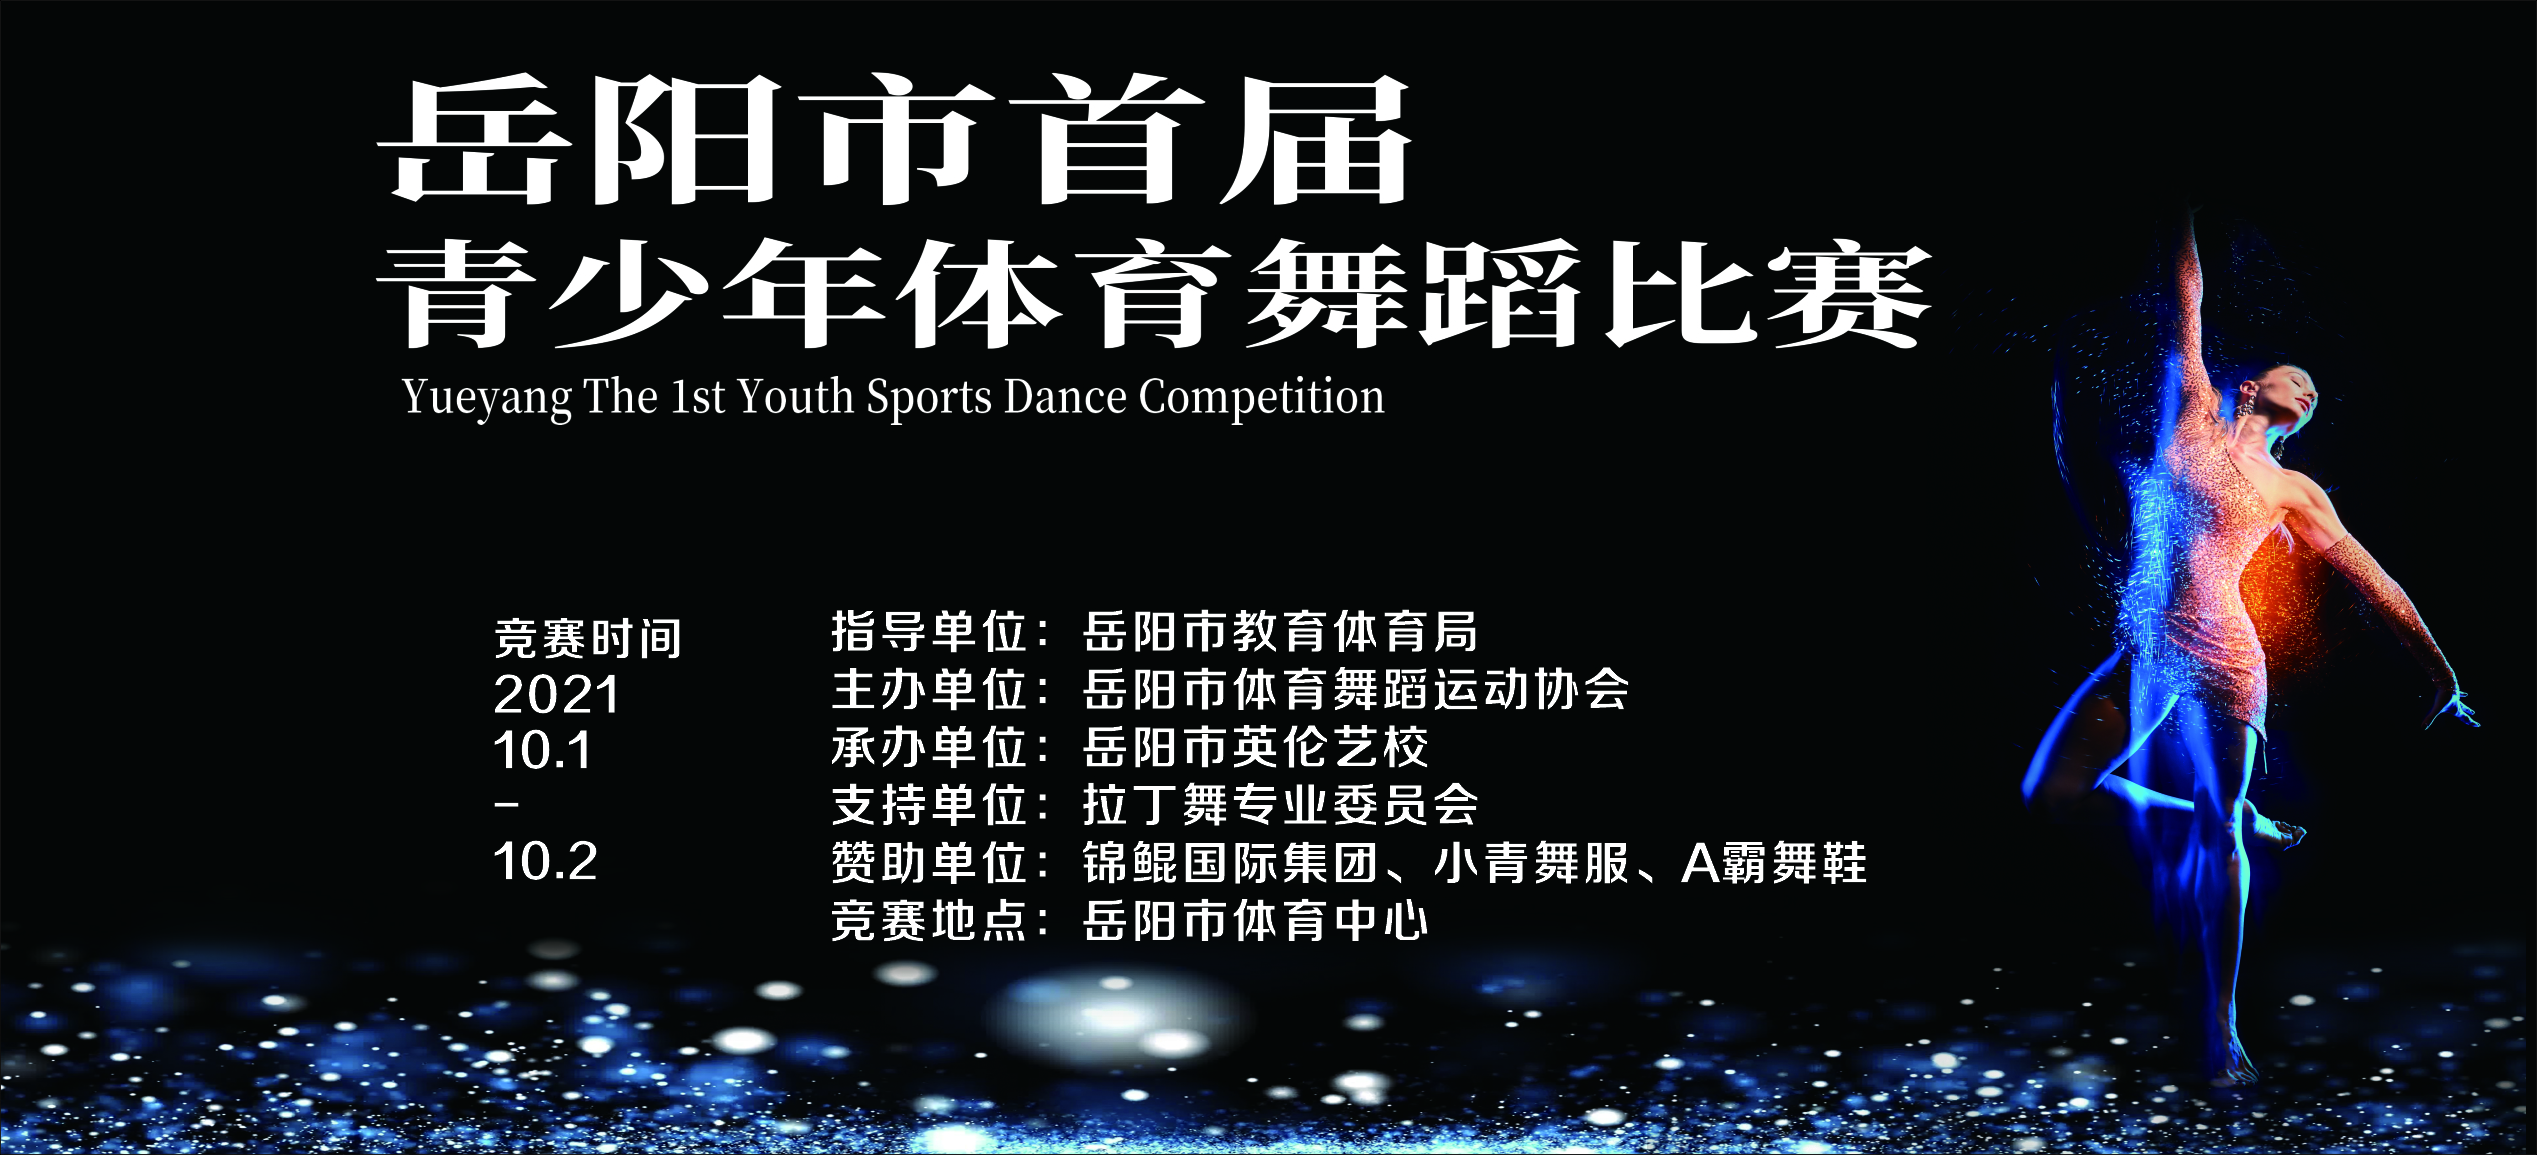 岳阳市首届青少年体育舞蹈比赛